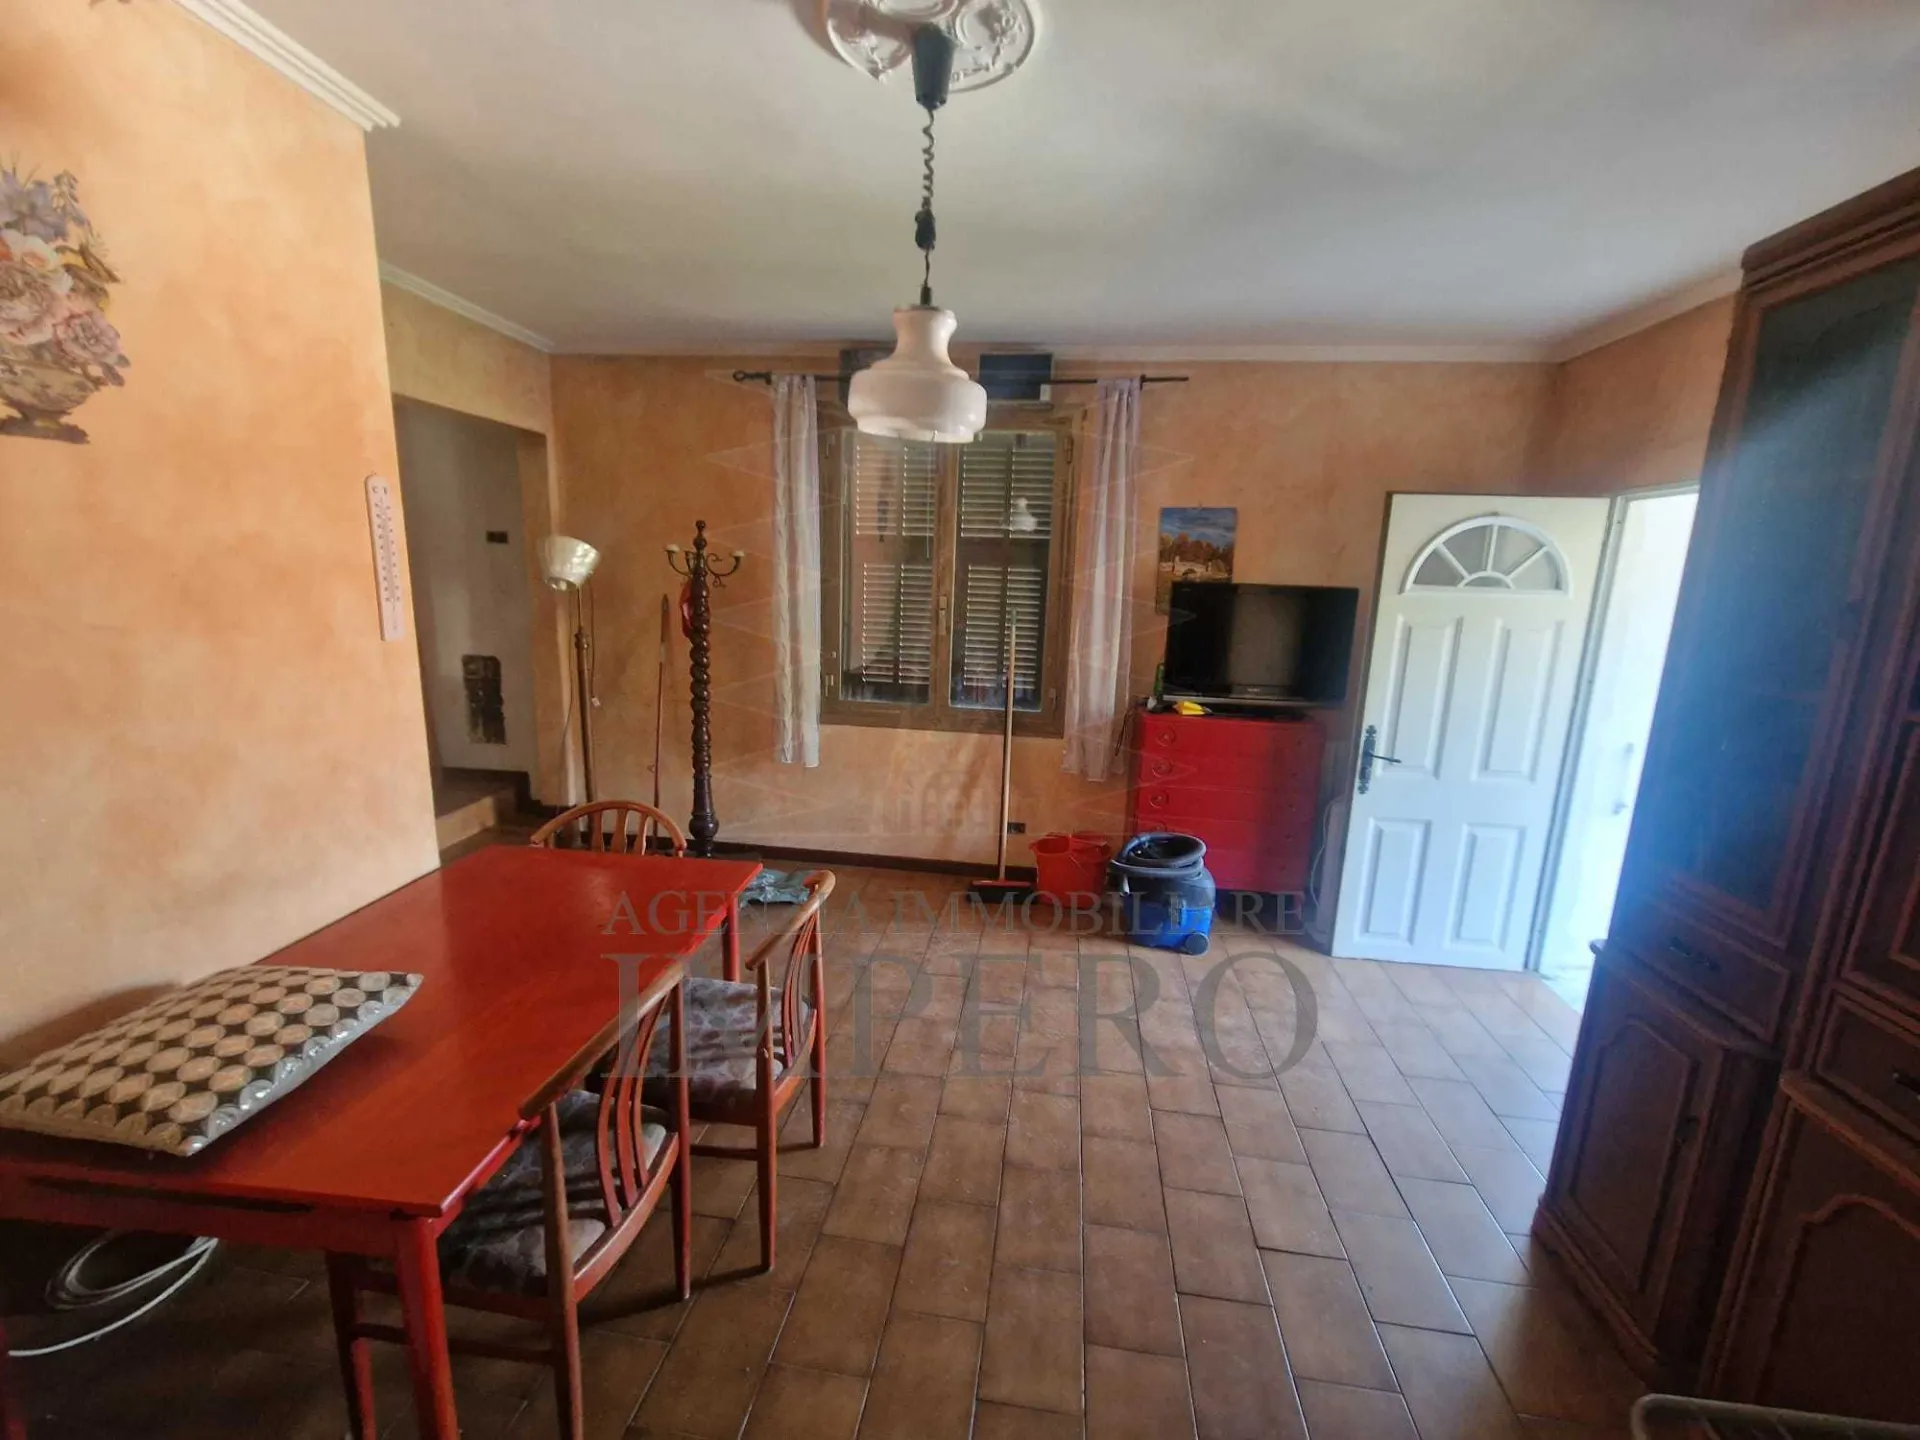 Immagine per Porzione di casa in vendita a Camporosso via Magauda 31